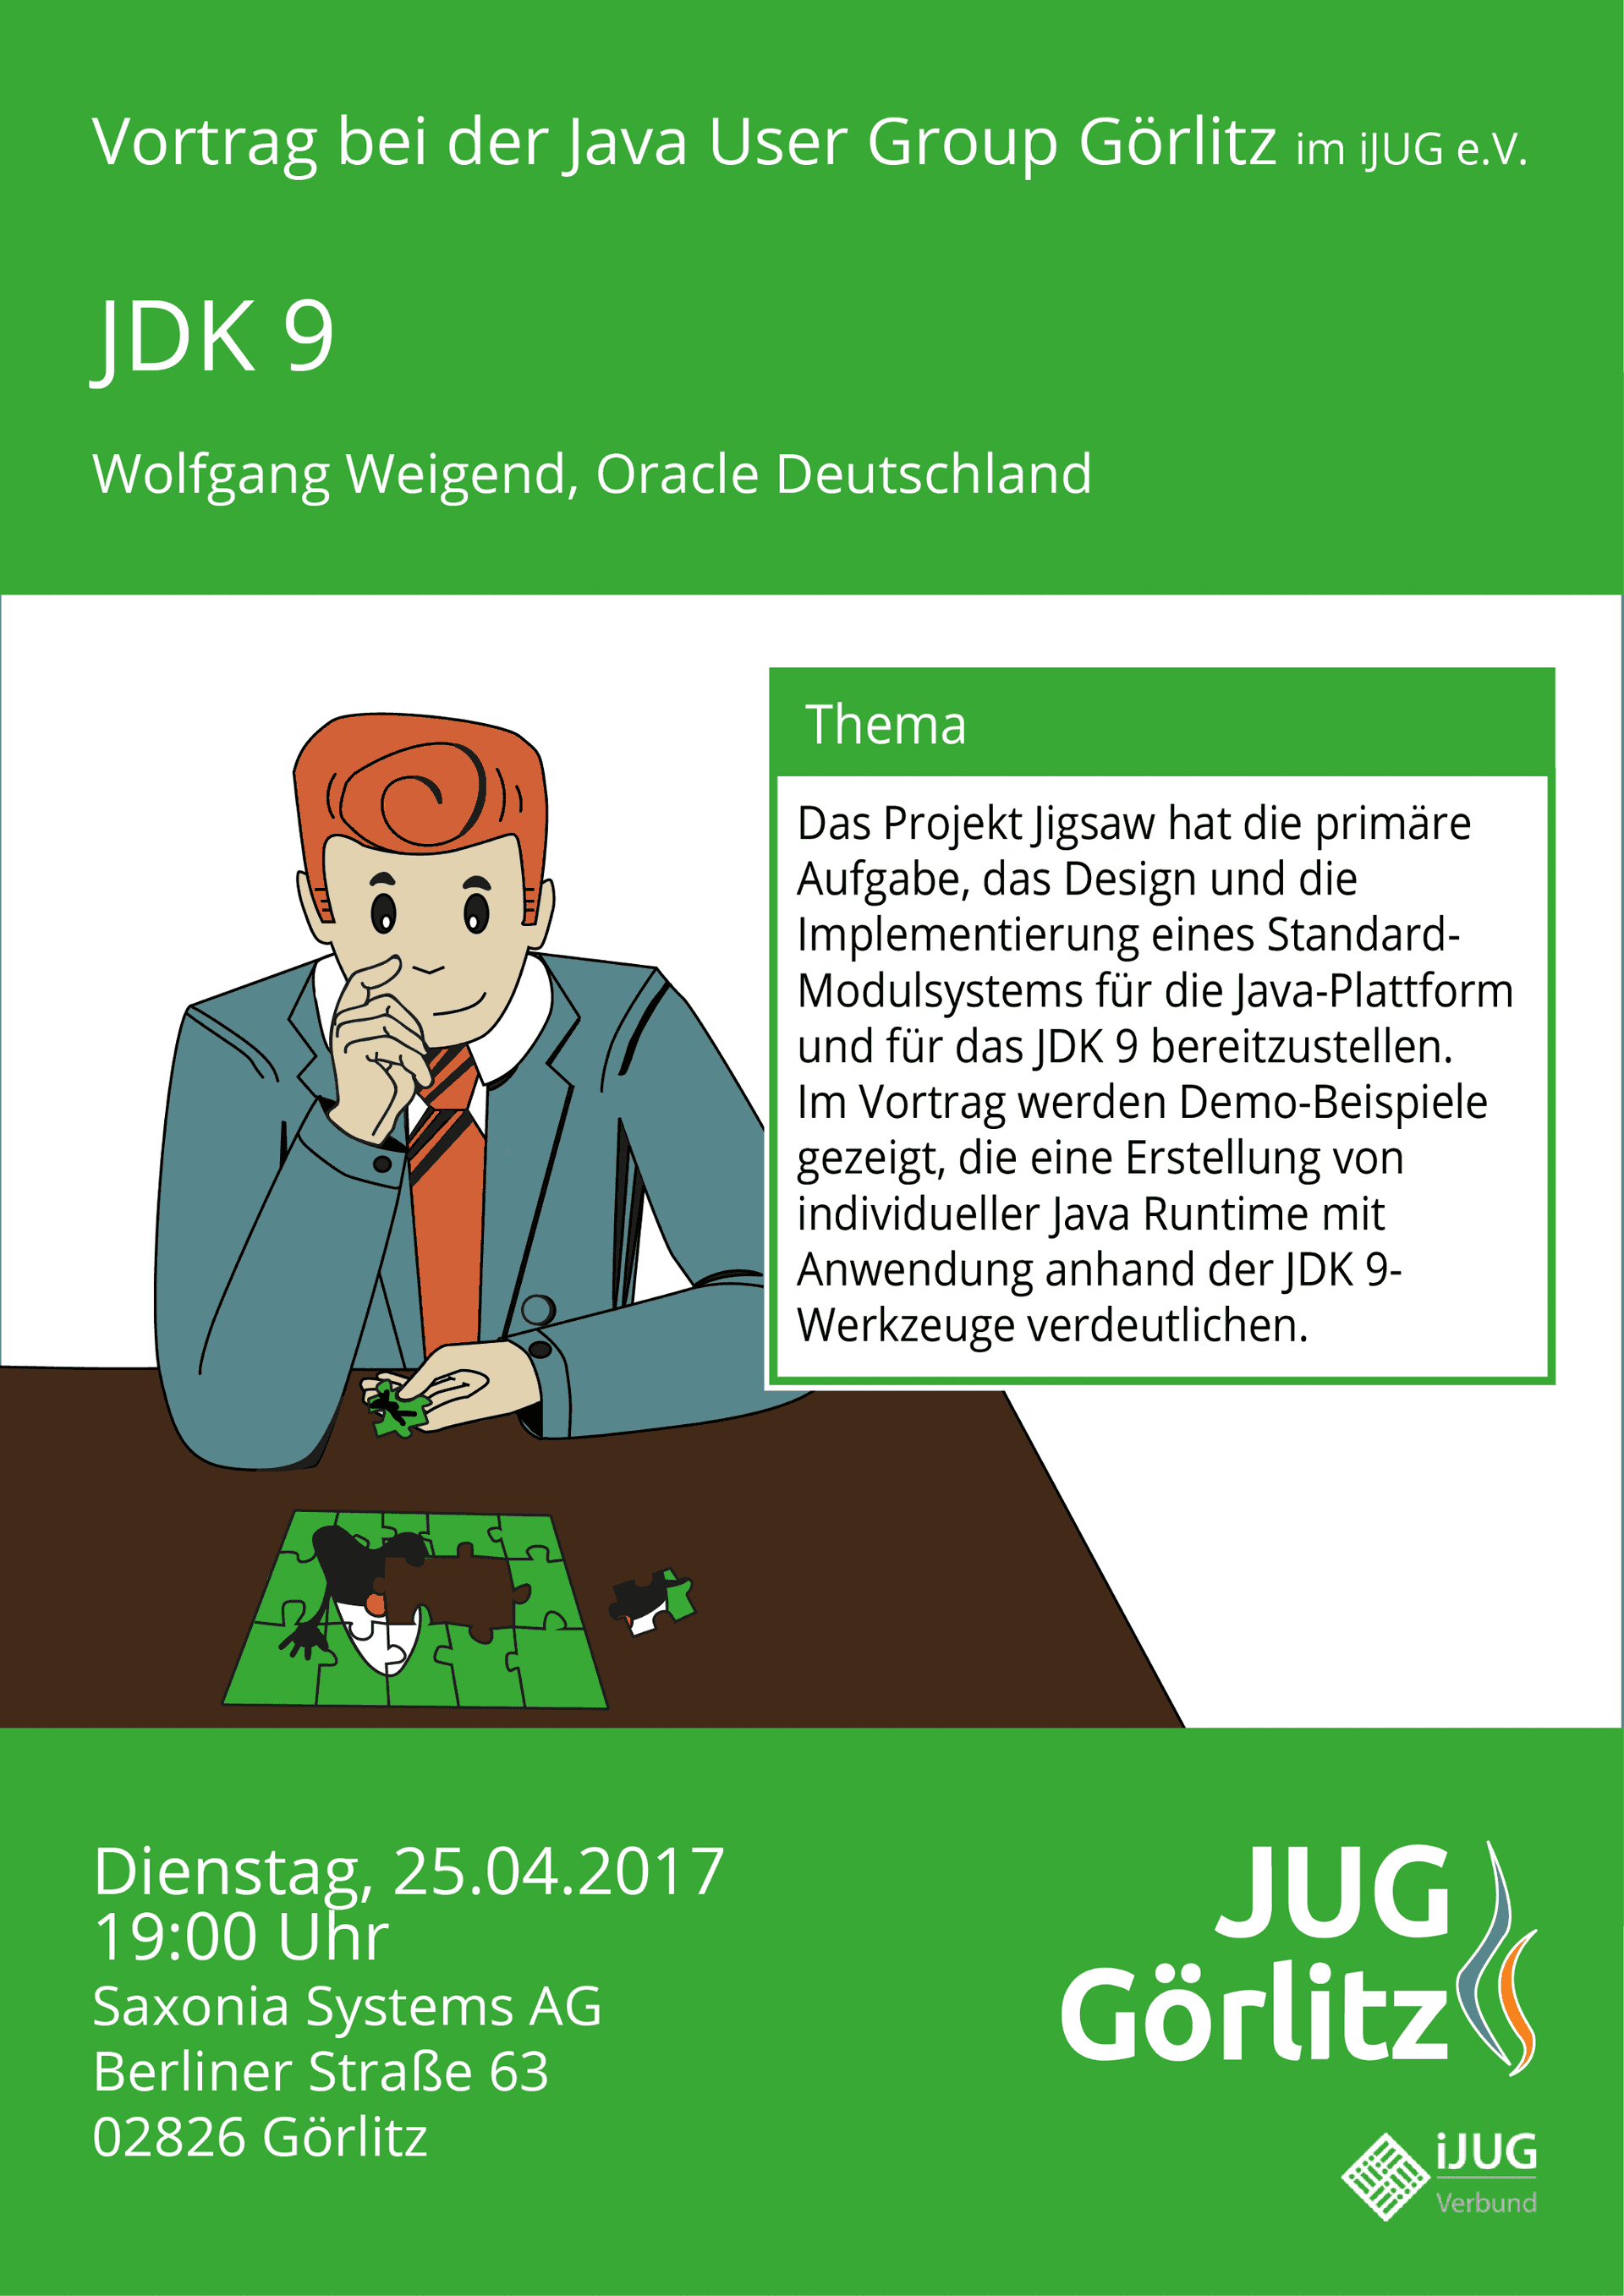 Poster: Jürgen sitzt am Tisch vor einem Puzzle. Er überlegt, wo er das nächste Puzzle-Teil einsetzen soll. Man erkennt bereits, dass das Puzzle ein Java-Duke darstellt, das Maskottchen von Java.